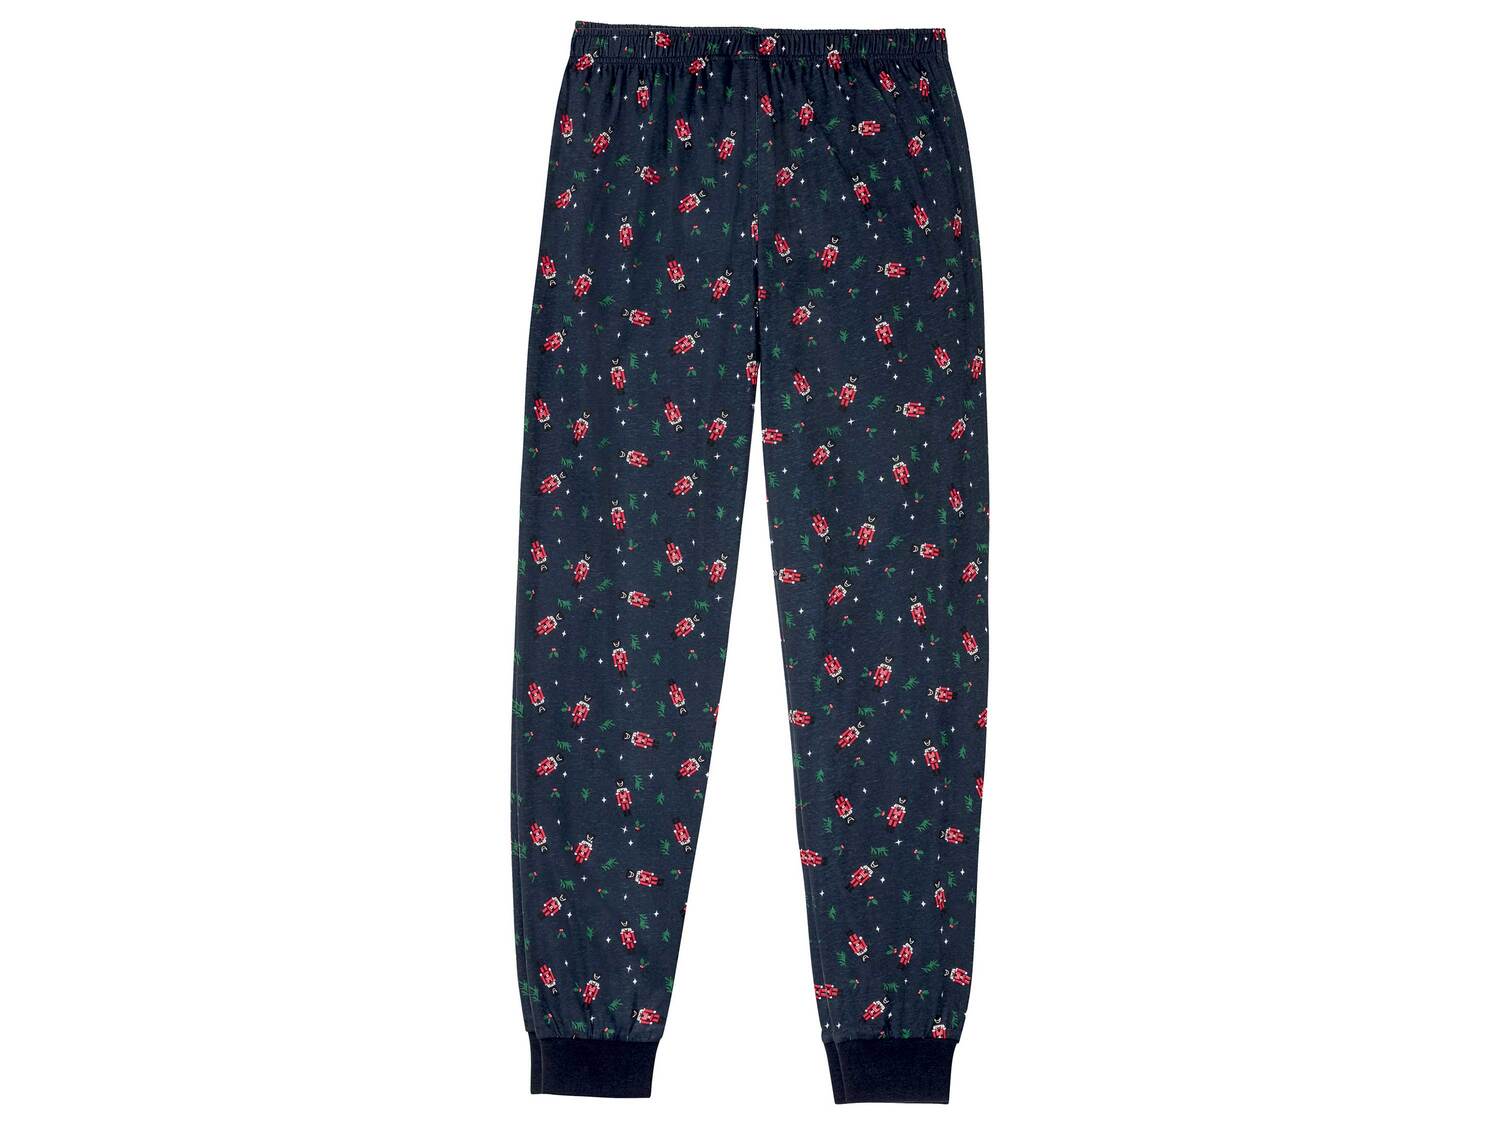 Pyjama homme , le prix 9.99 &#8364; 
- Du S au XXL selon mod&egrave;le.
- ...